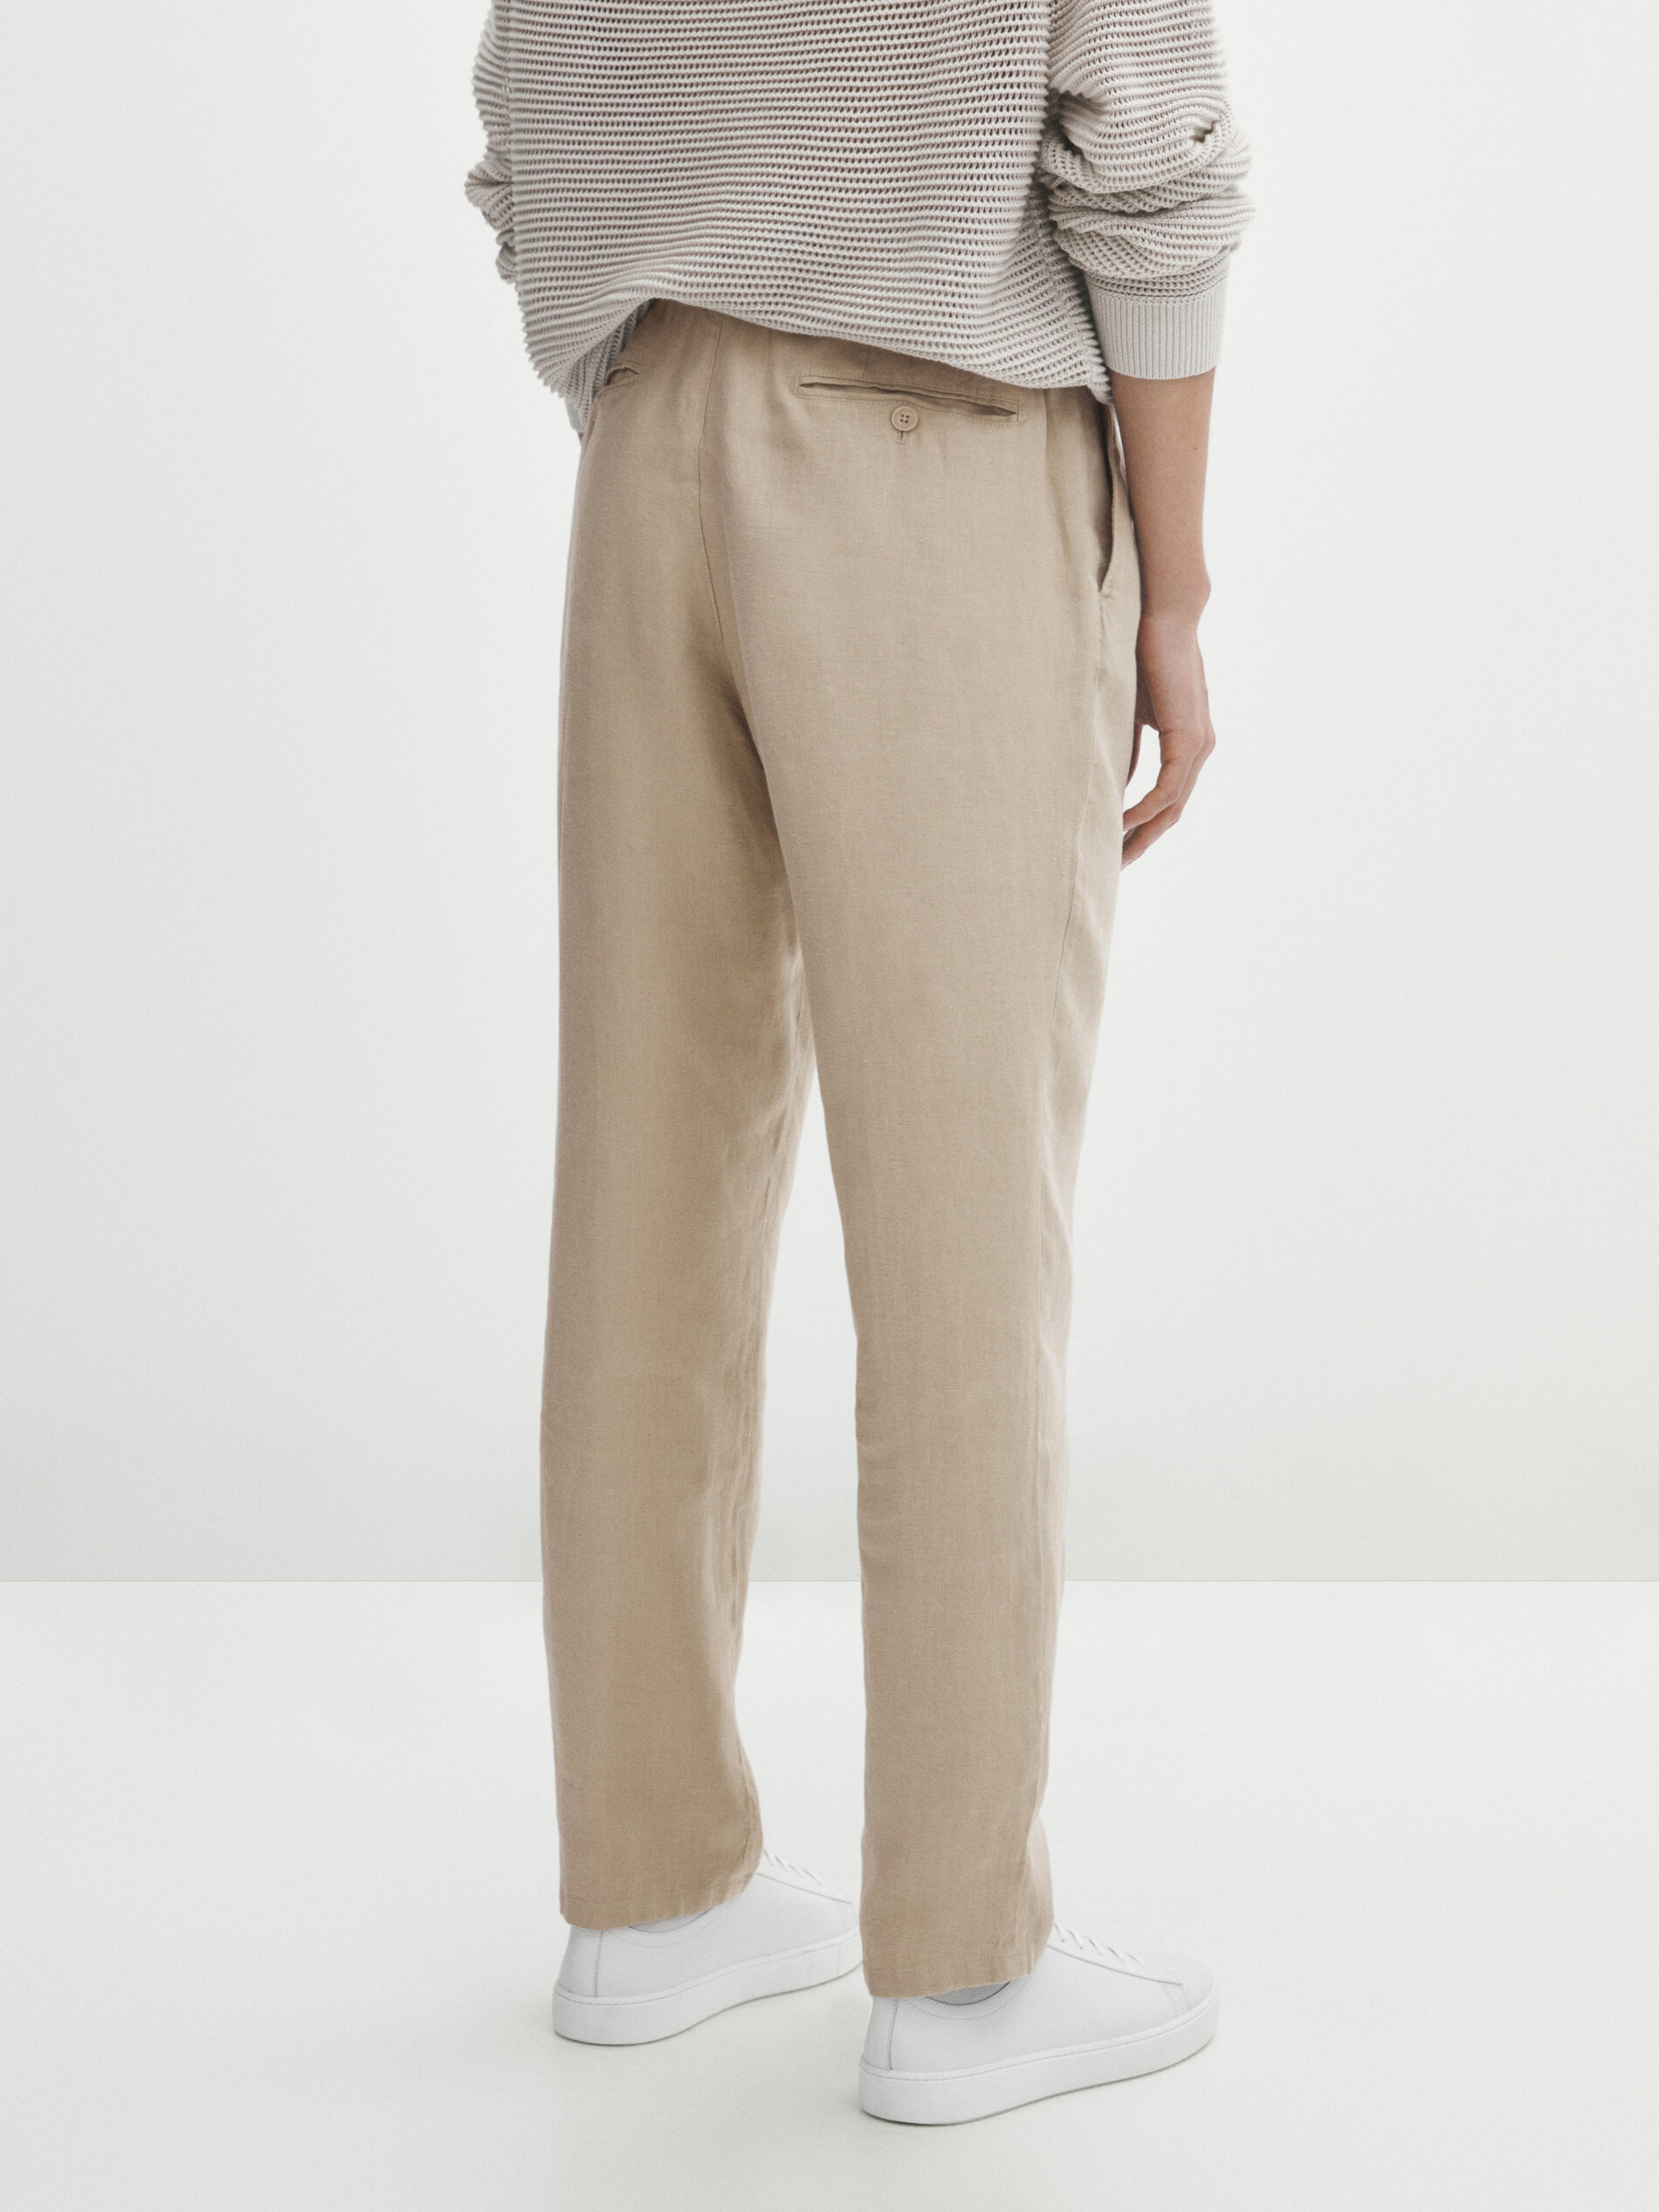 Buy Dennis Lingo Men Slim Fit Beige Linen Trouser at Amazon.in